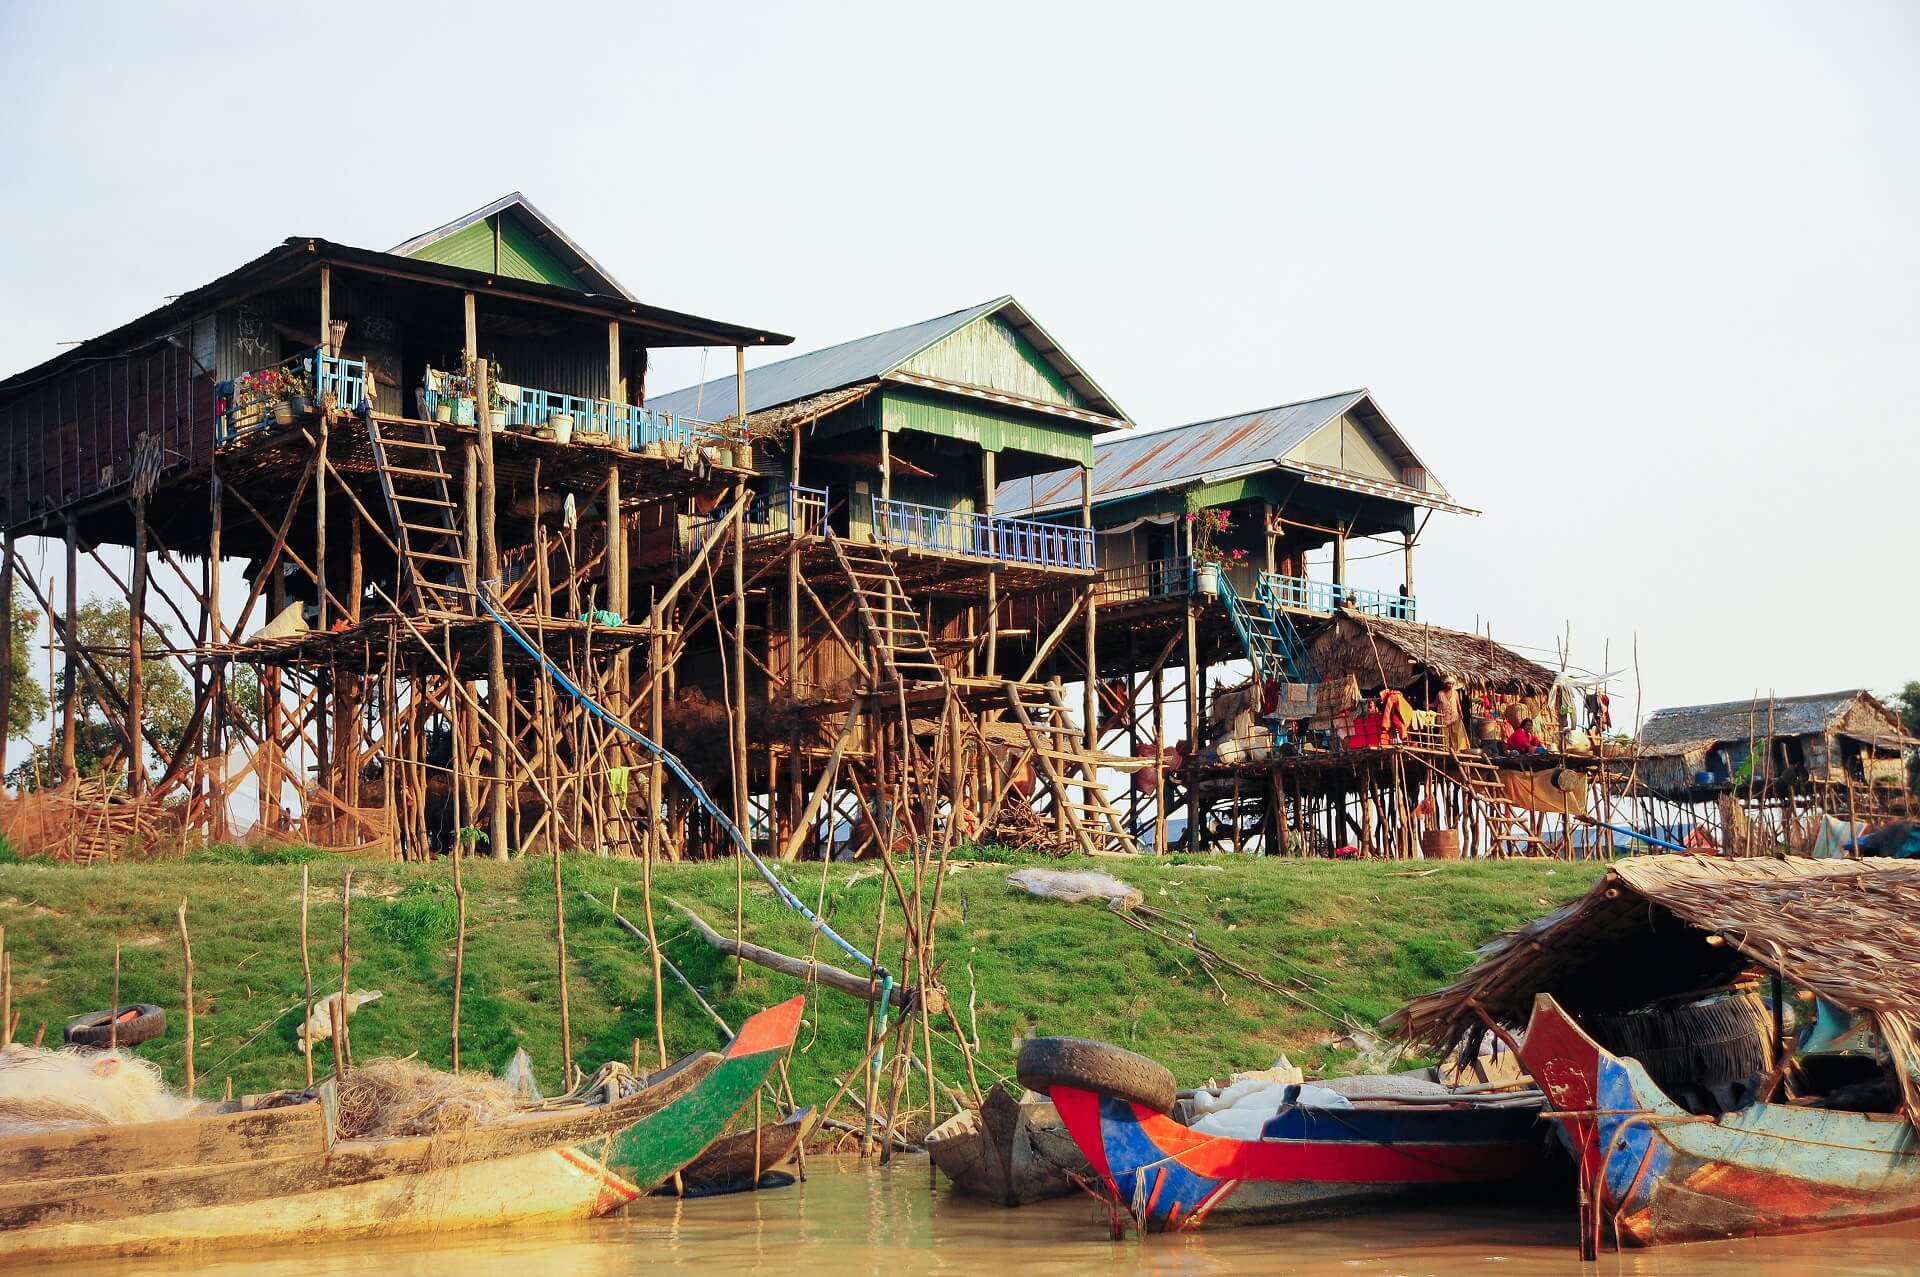 Die bunten Häuser auf Stelzen in einem Dorf nahe Siem Reap